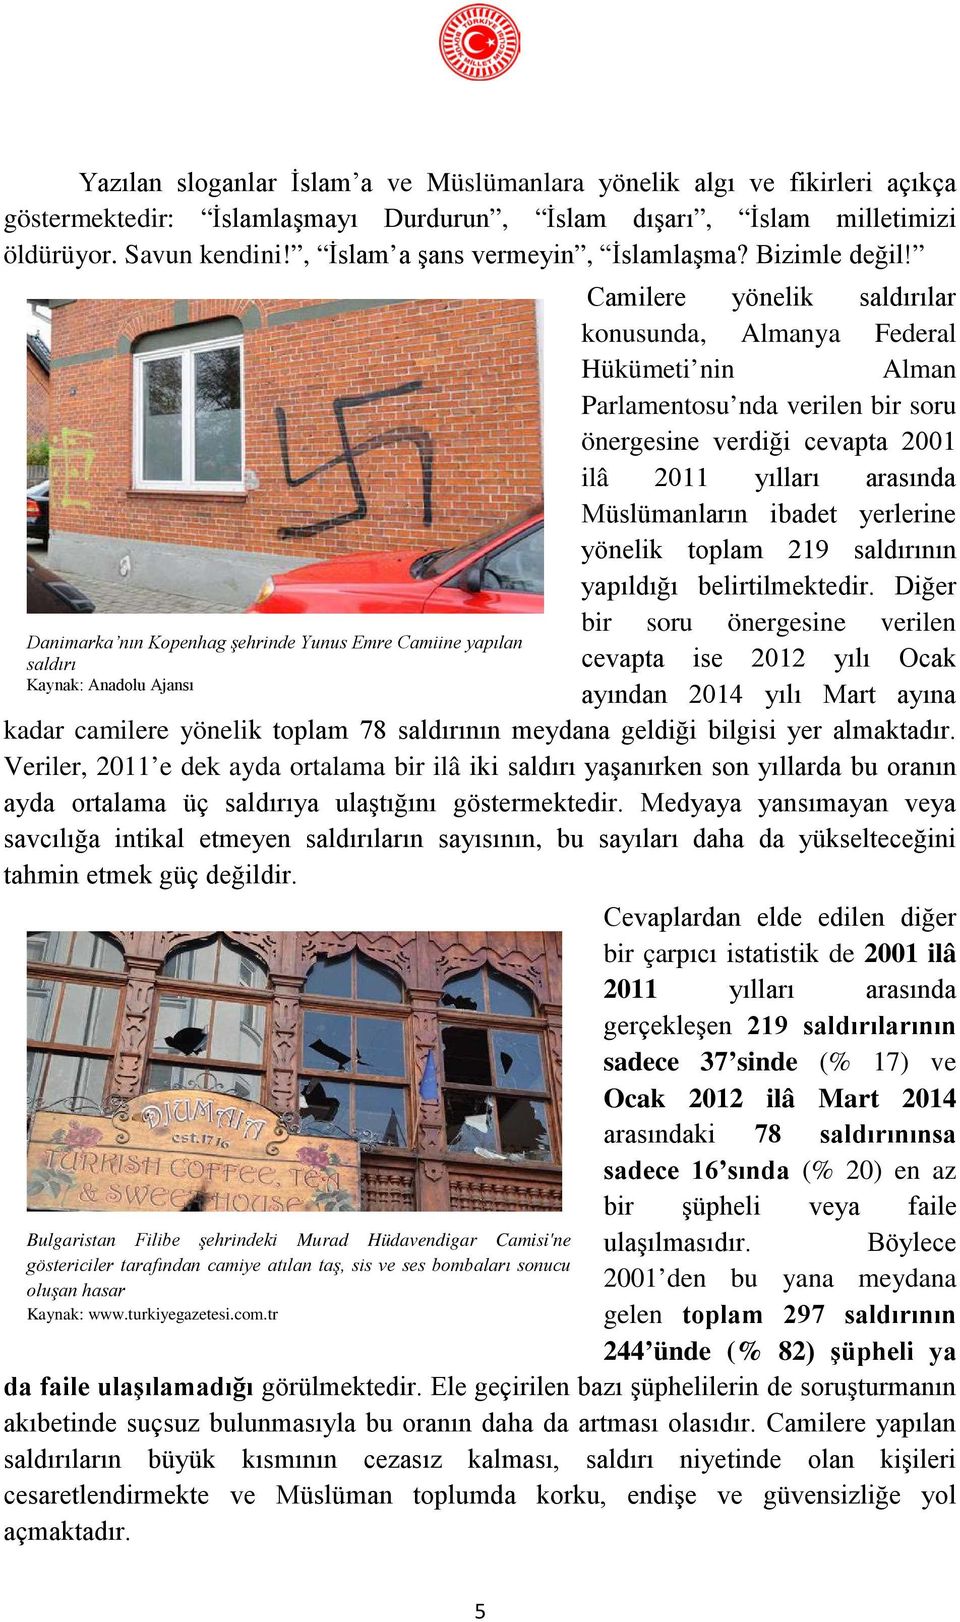 Camilere yönelik saldırılar konusunda, Almanya Federal Hükümeti nin Alman Danimarka nın Kopenhag şehrinde Yunus Emre Camiine yapılan saldırı Kaynak: Anadolu Ajansı Parlamentosu nda verilen bir soru